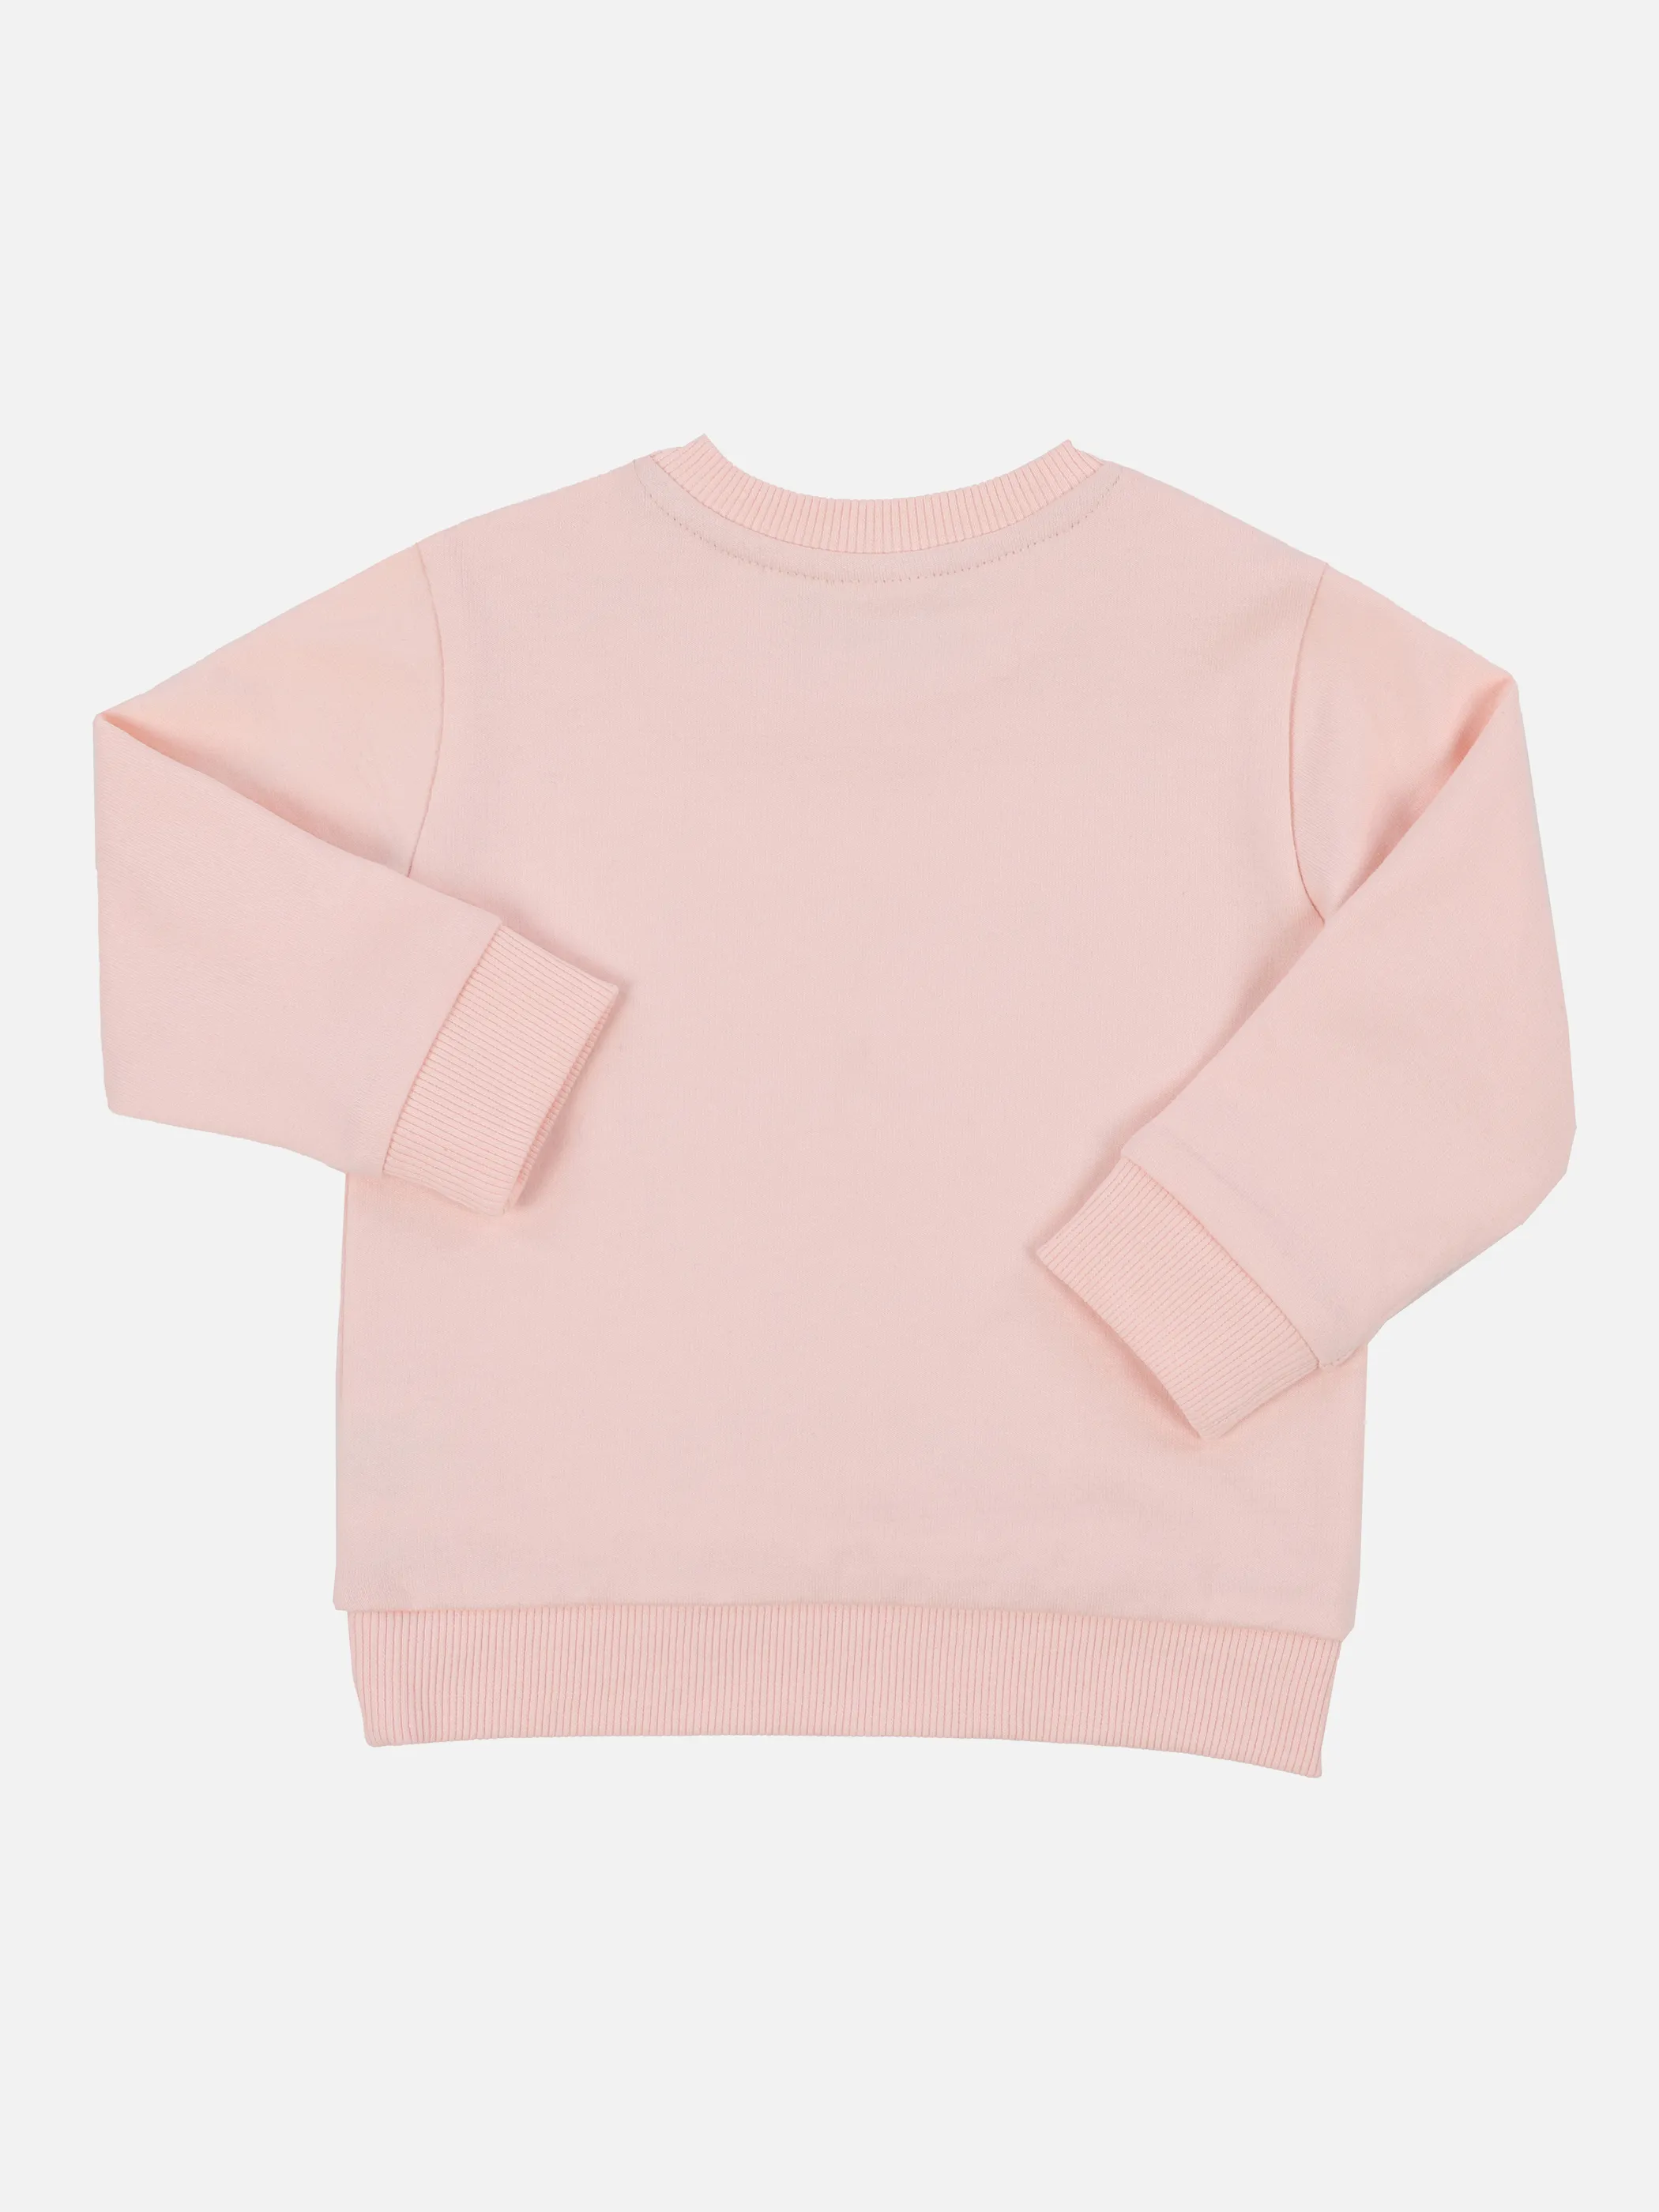 Bubble Gum BG Sweater in rose/beige mit Weiß 868441 BEIGE 2